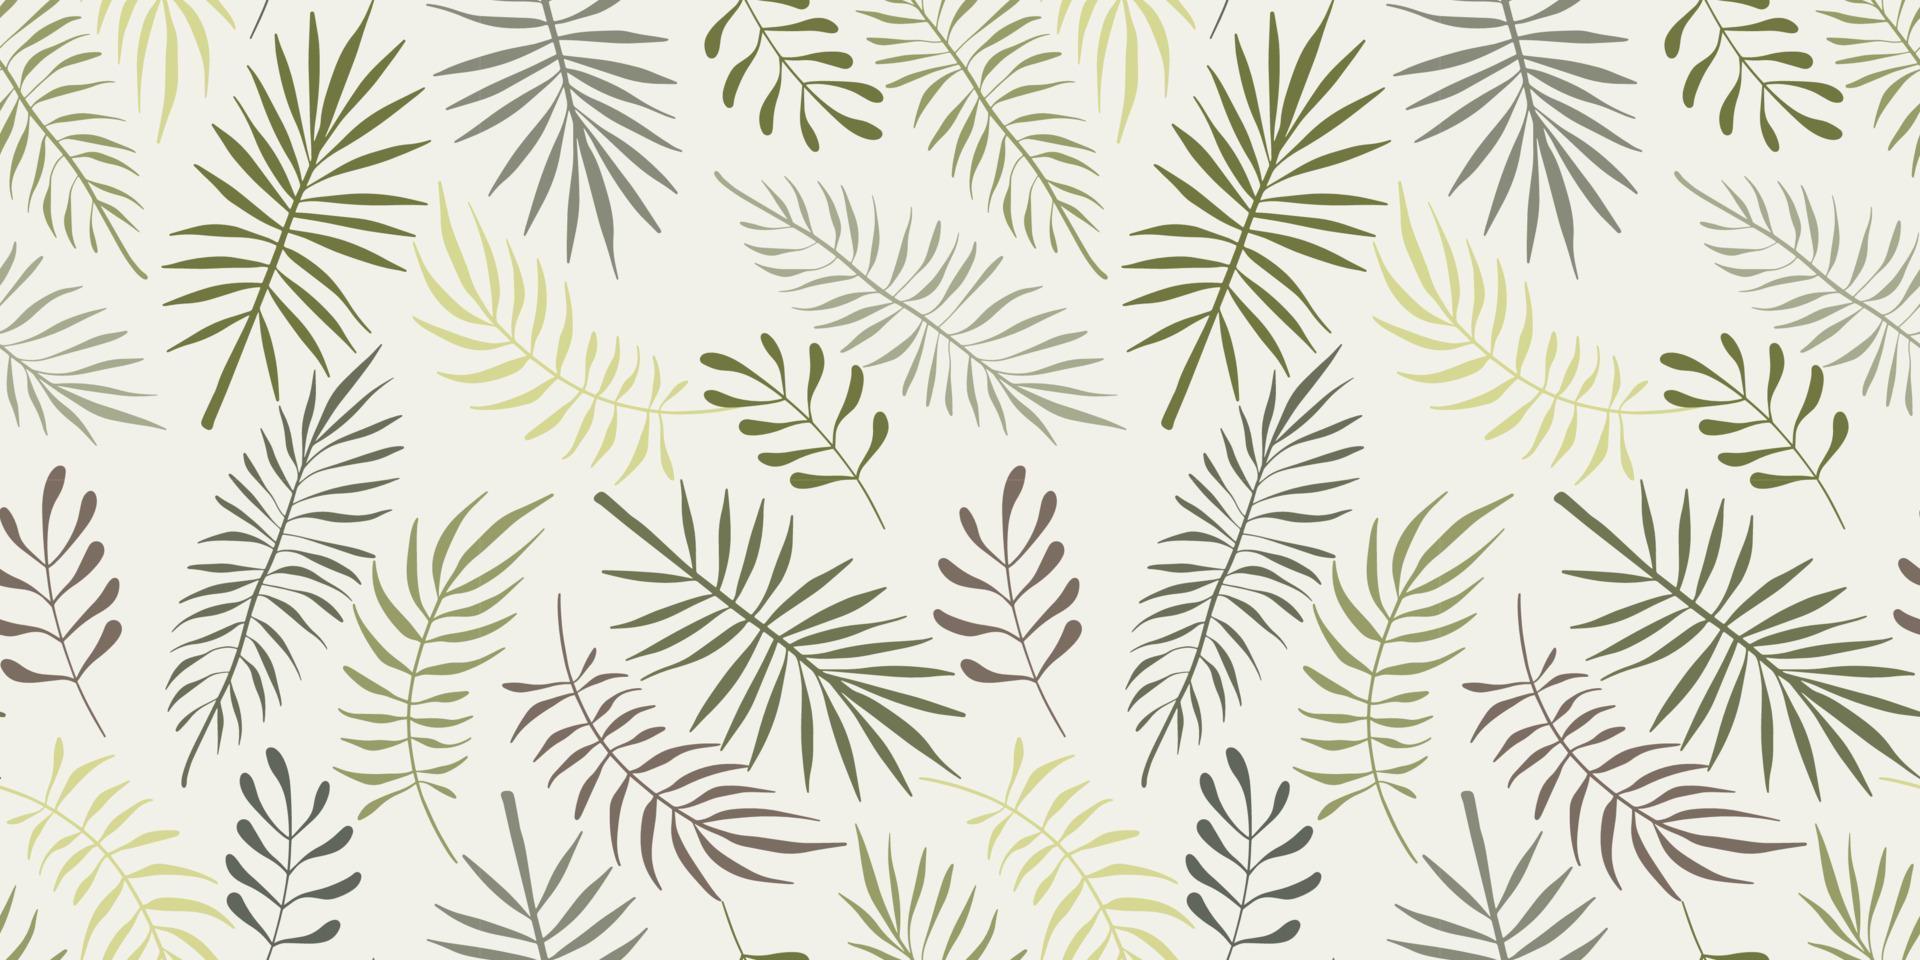 patrón sin costuras de hojas de palma tópicas sobre fondo blanco. vector moderno diseño de rama de verano para papel, cubierta, tela, decoración interior